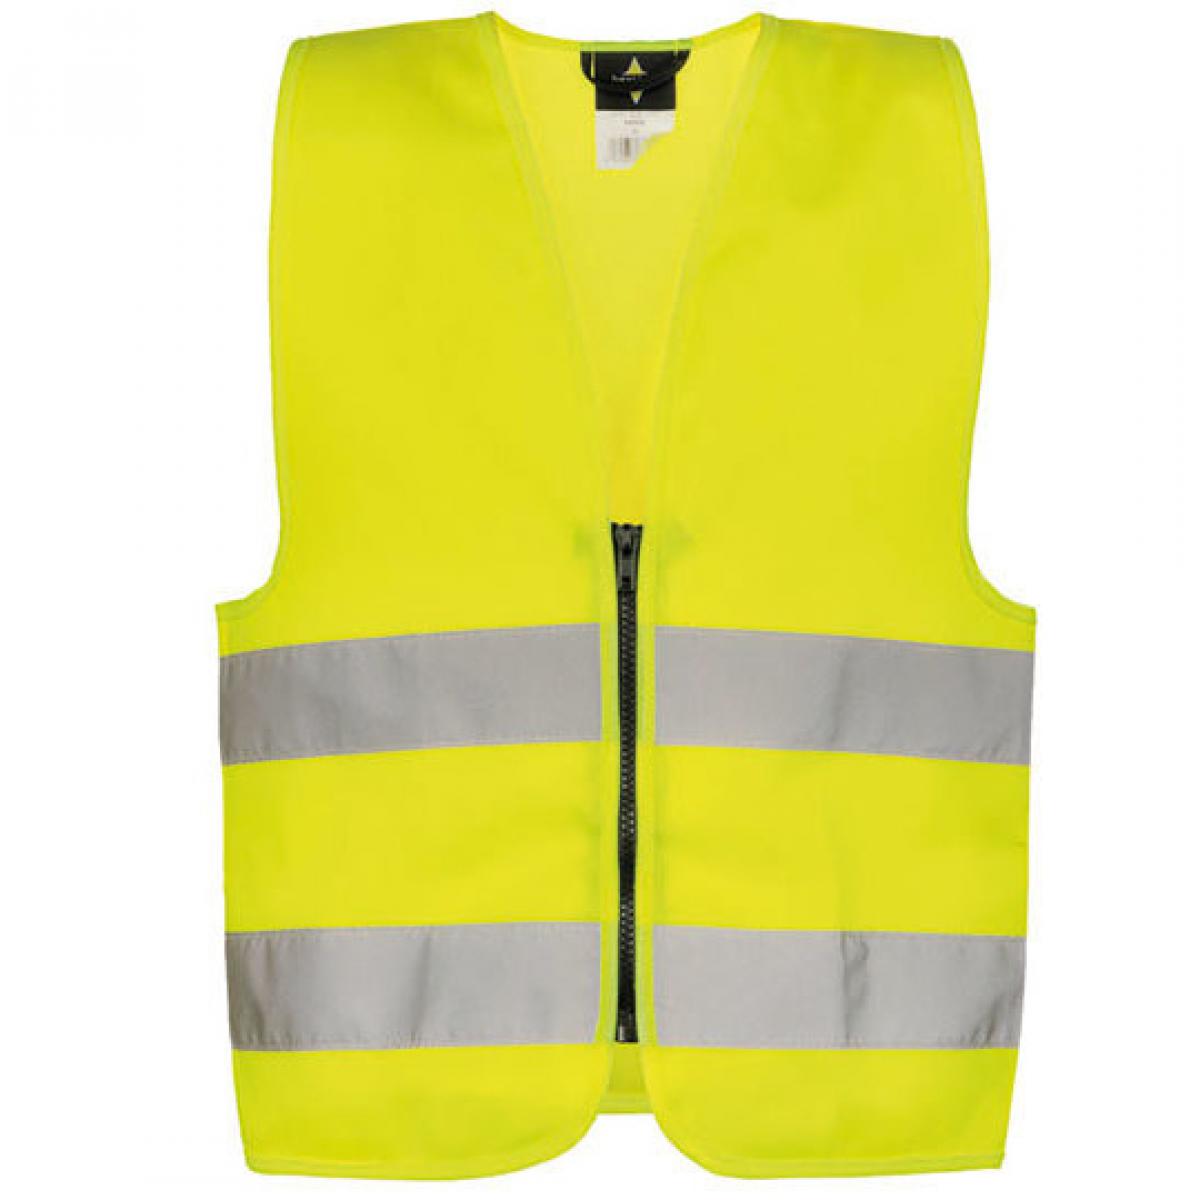 Hersteller: Korntex Herstellernummer: KWRX Artikelbezeichnung: Kinder Safety Vest for Kids with Zipper EN1150 Farbe: Signal Yellow